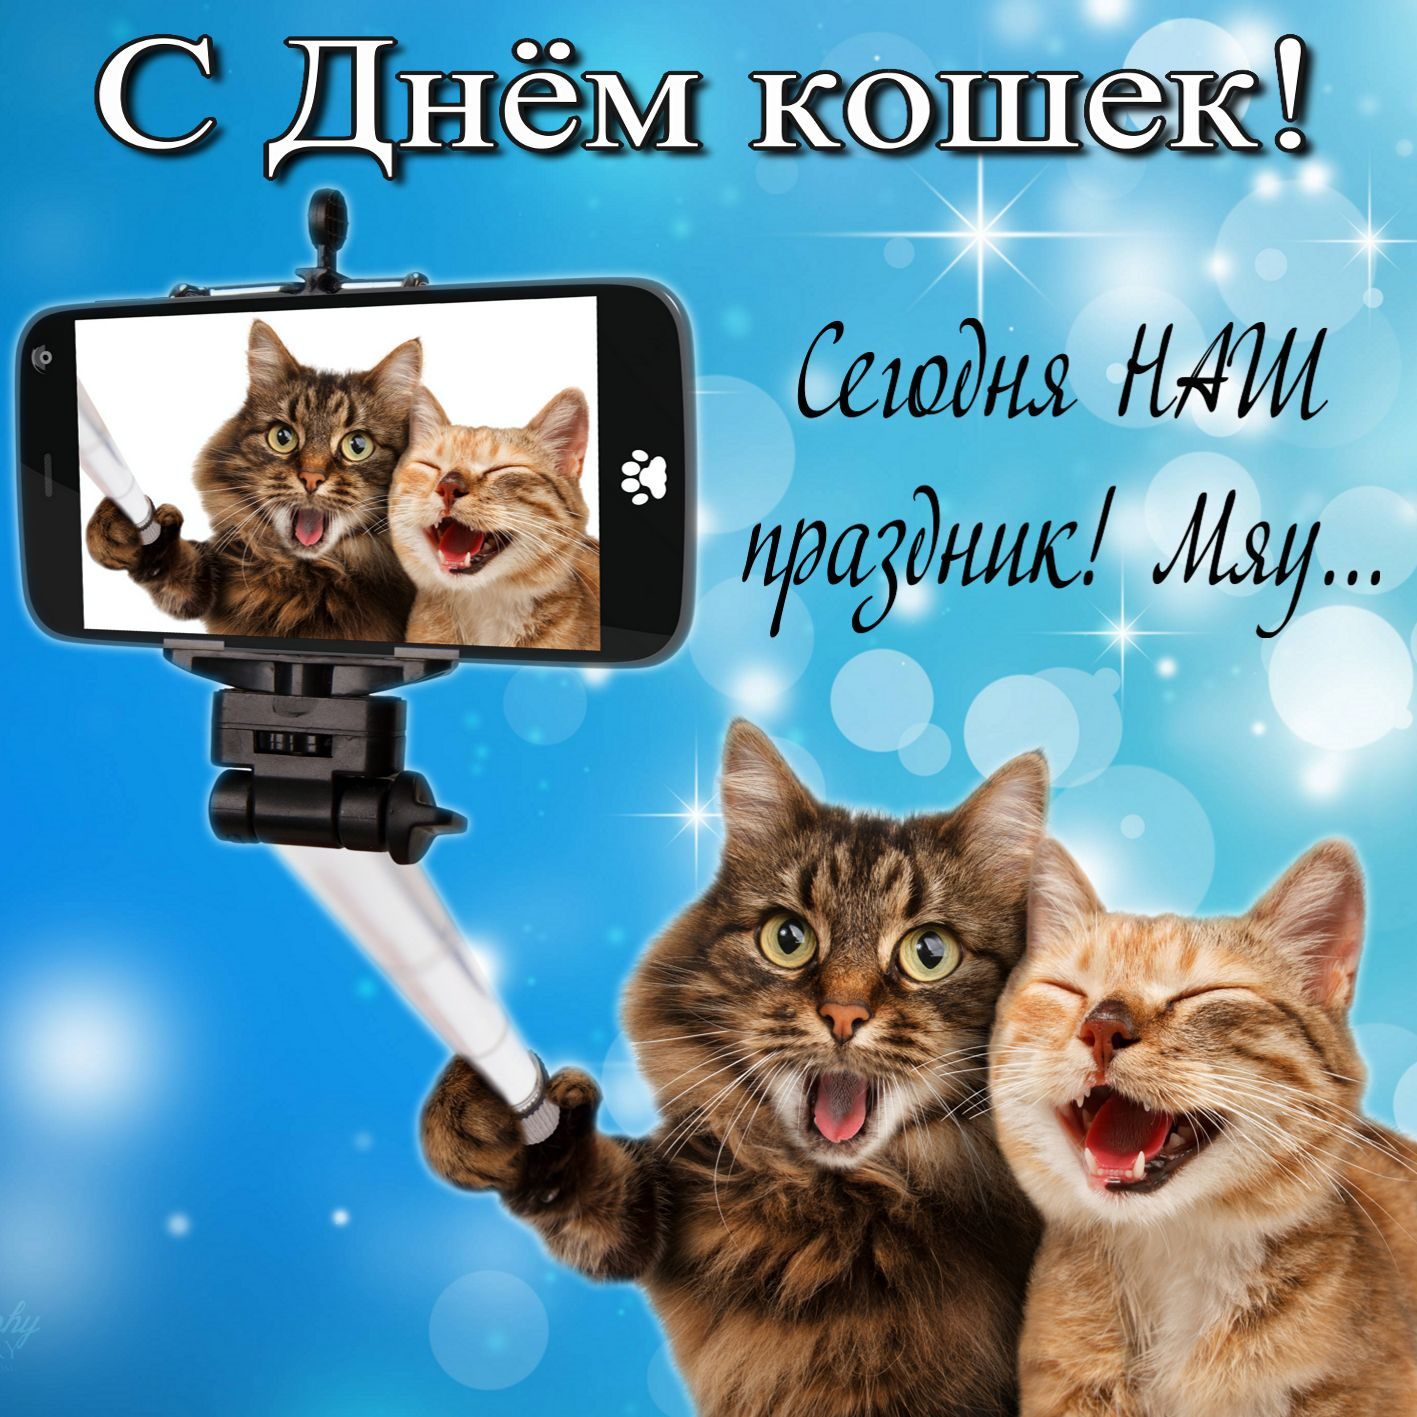 День кошек - всемирный, праздник 1 марта в россии, в других странах, как празднуется